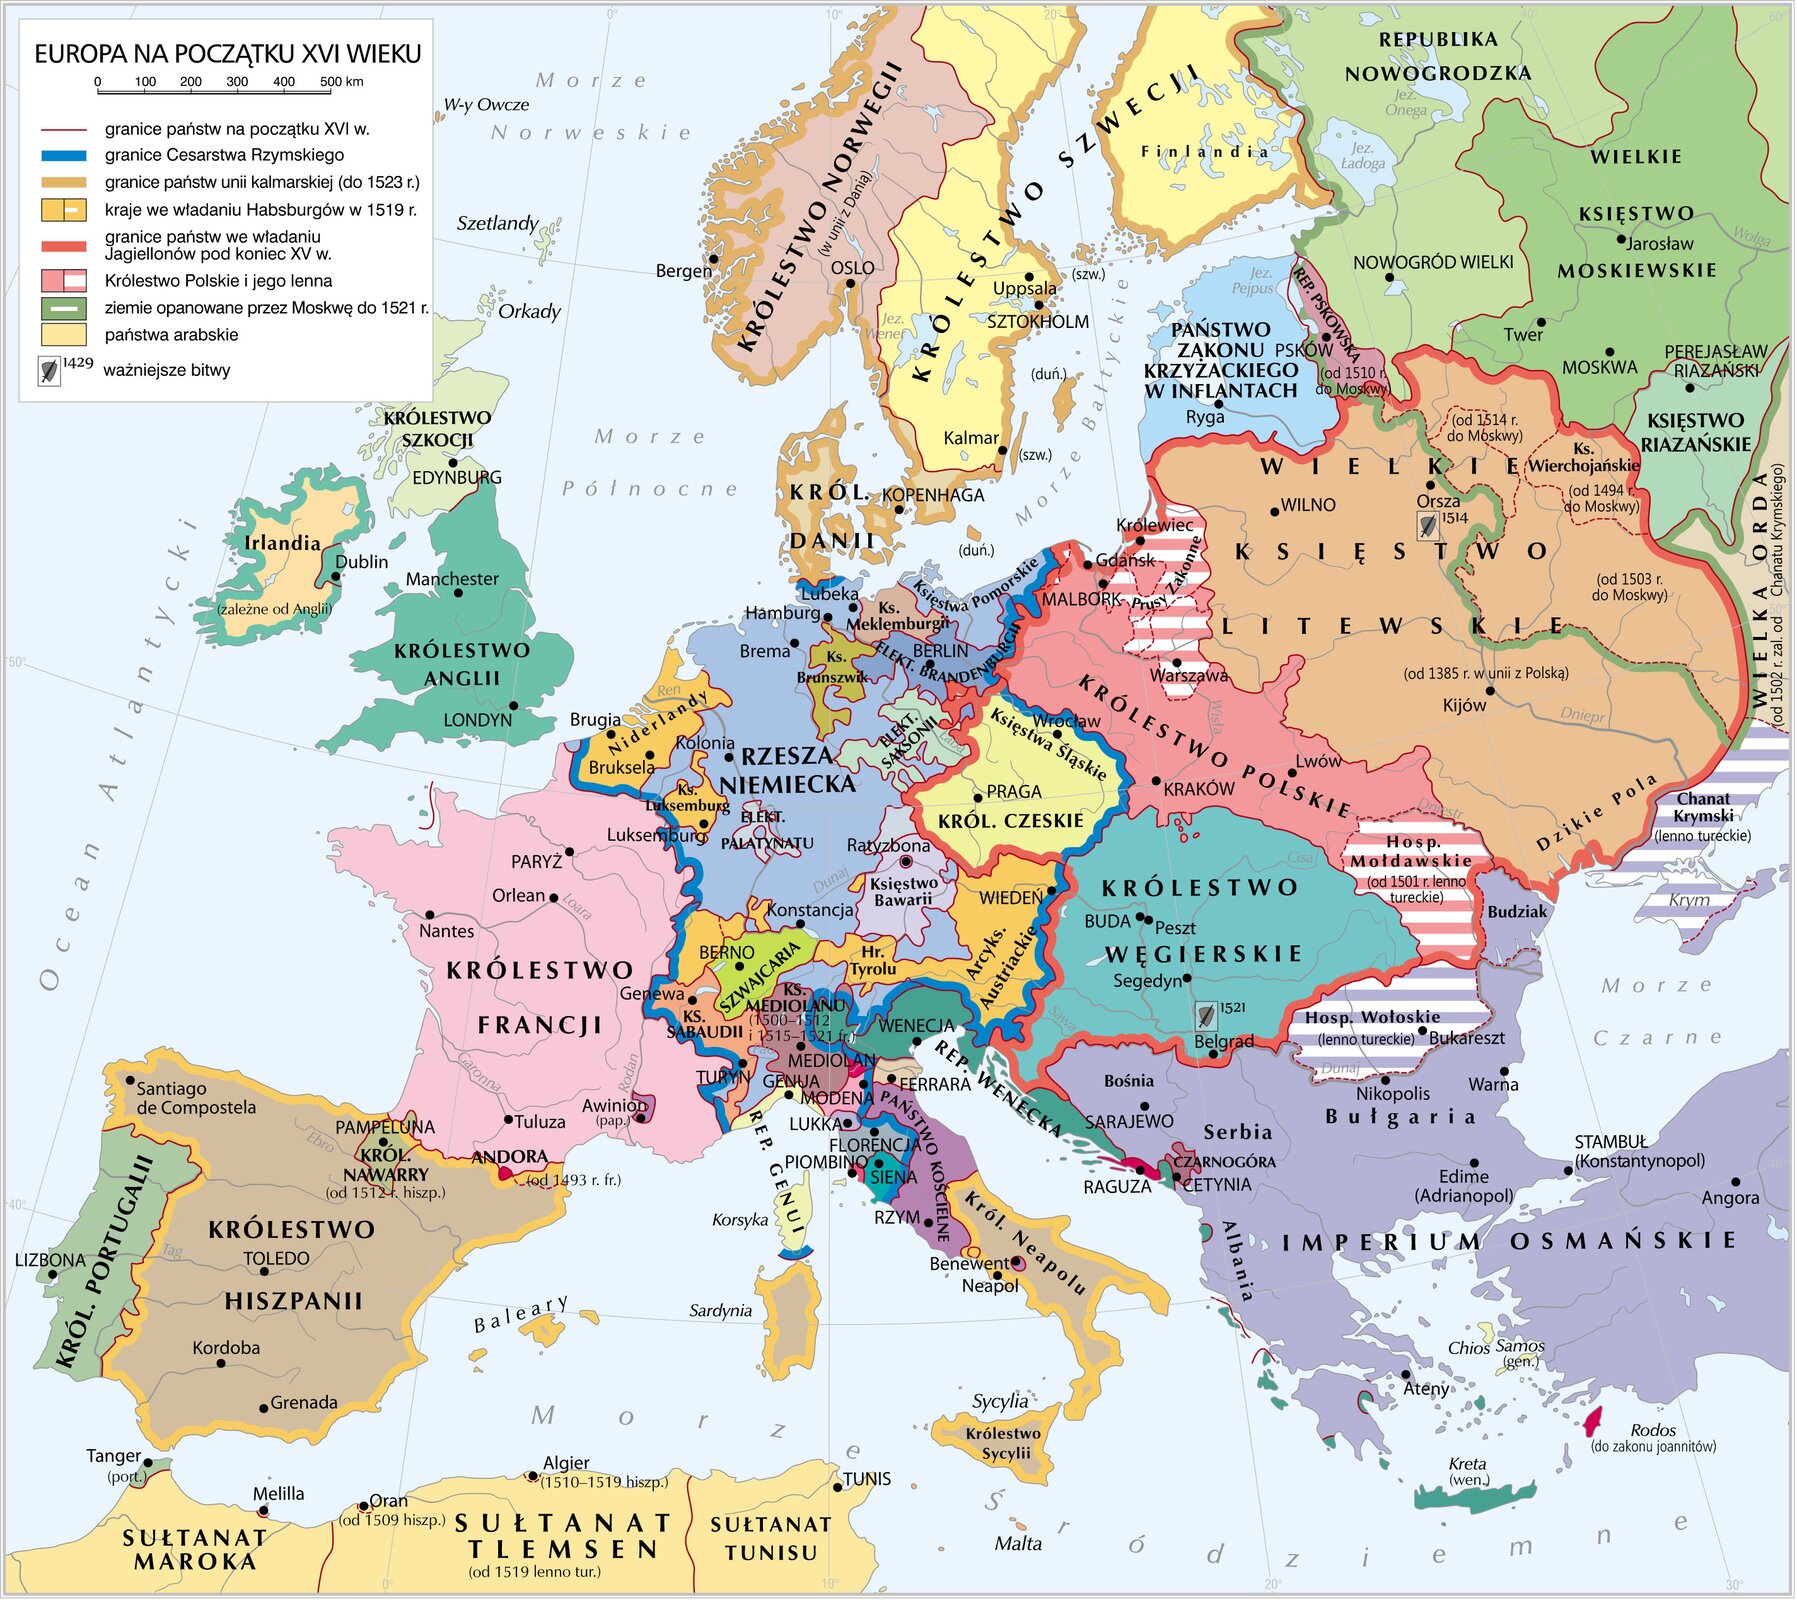 Mapa Europa na początku XVI w. Zawiera informacje o państwach istniejących w tym czasie i ich granicach.